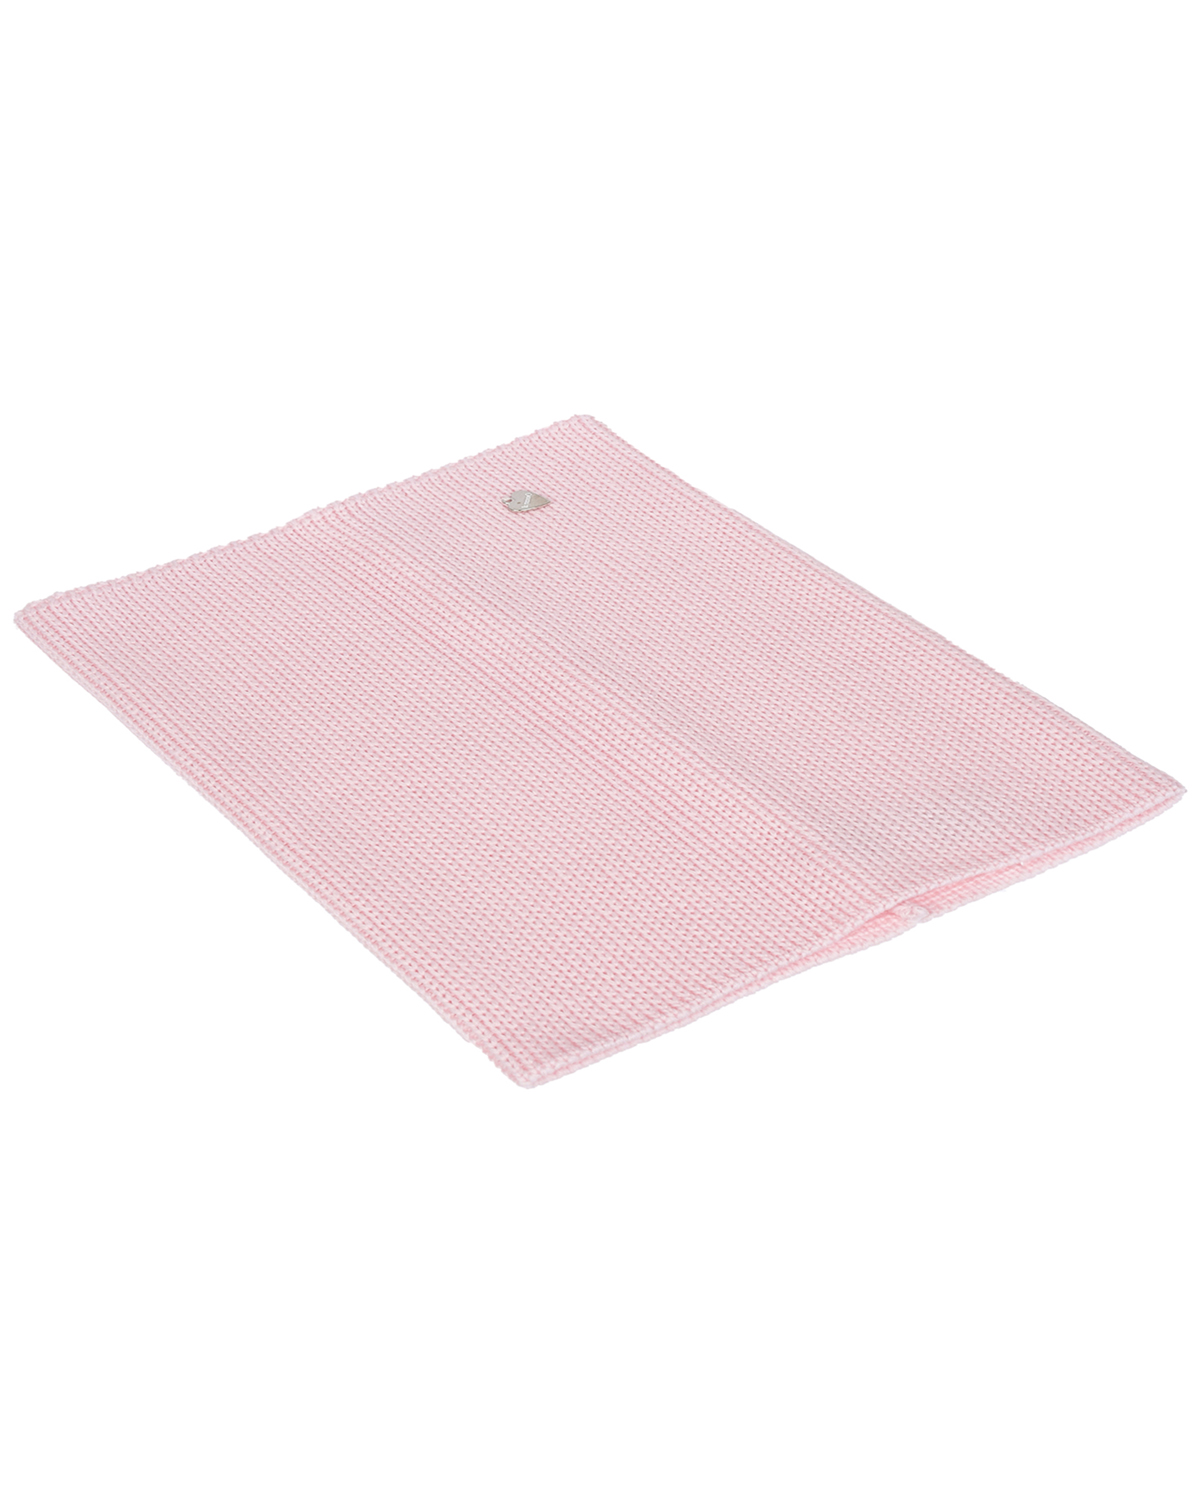 Розовый шарф-ворот, 23х33 см Il Trenino детский, размер unica